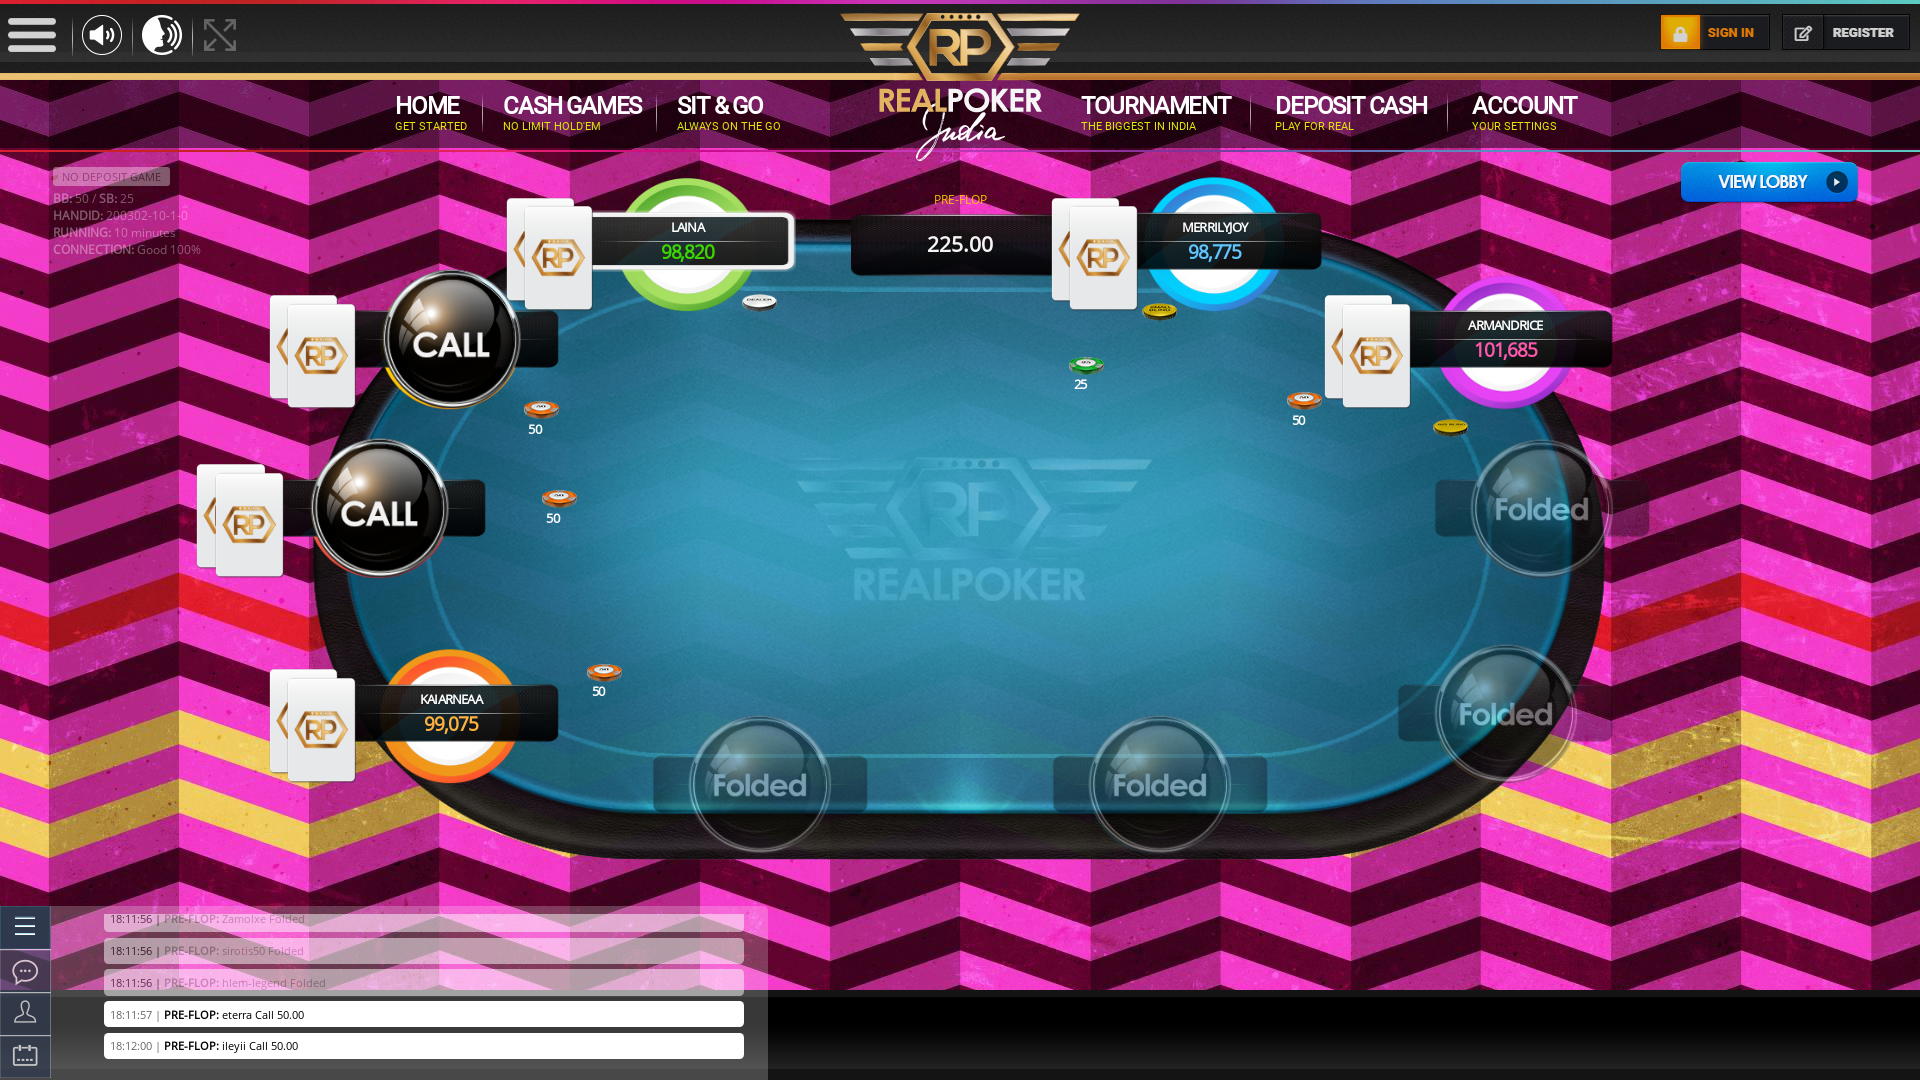 Mandovi River Online Poker from September